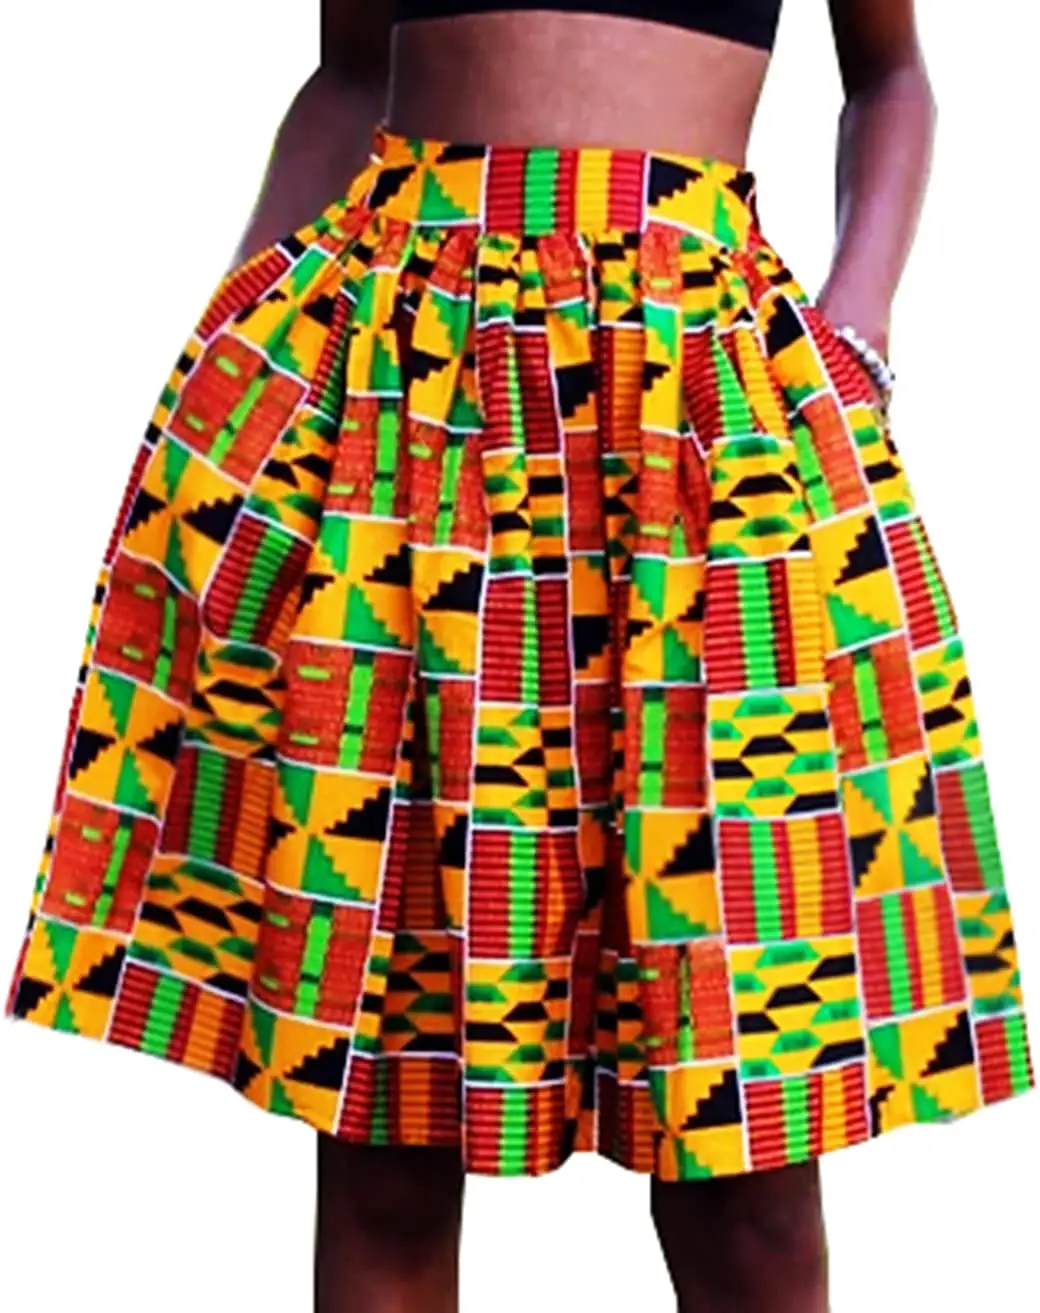 Chân Váy Nữ In Sáp Kente Châu Phi Chân Váy Chữ A Ankara Loe Có Túi Chân Váy Ngắn Cotton Kent Ankara